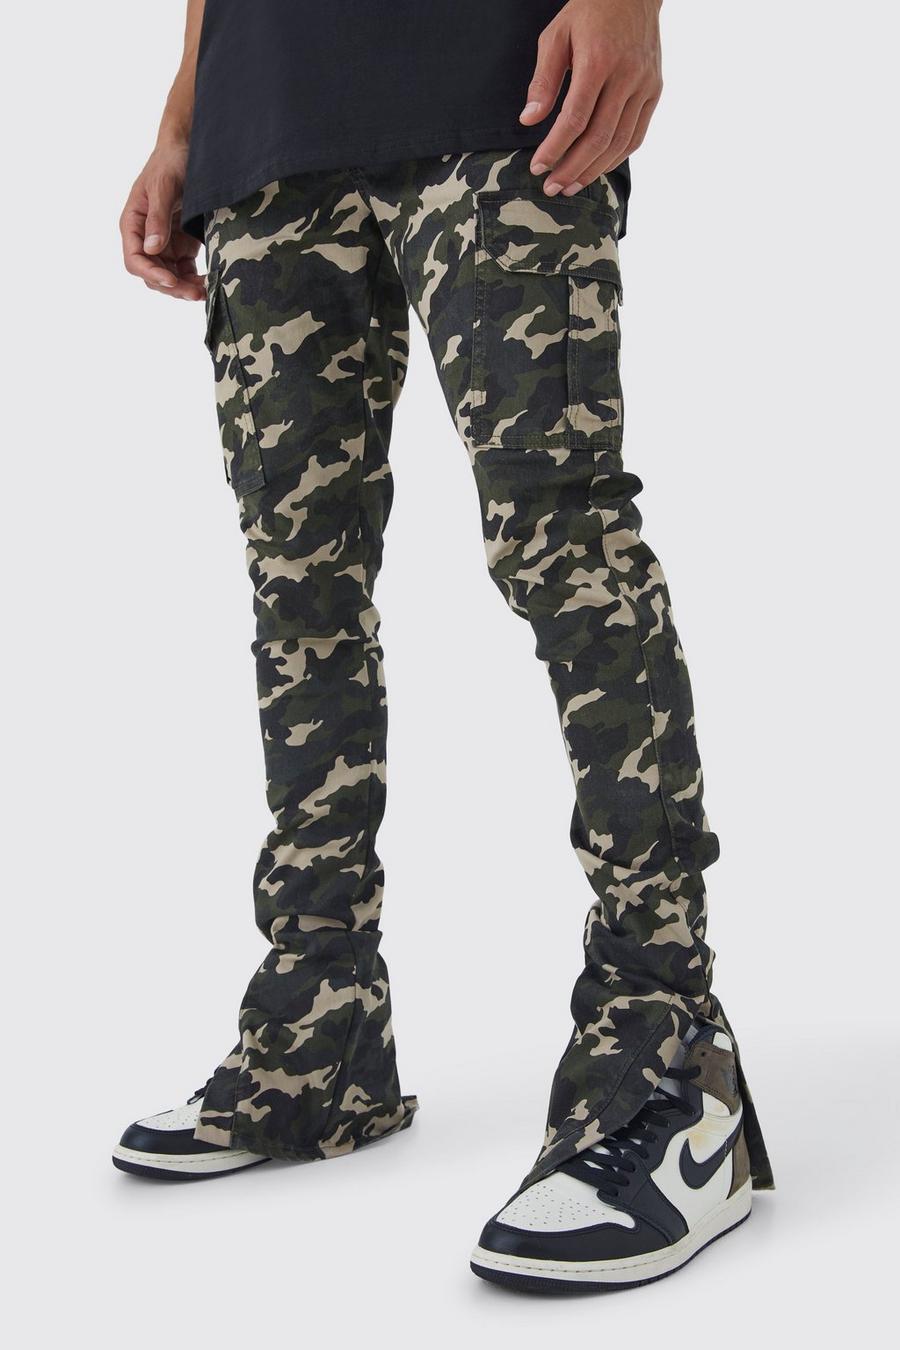 Pantaloni Cargo Tall Skinny Fit in fantasia militare con pieghe sul fondo e spacco sul fondo, Khaki caqui